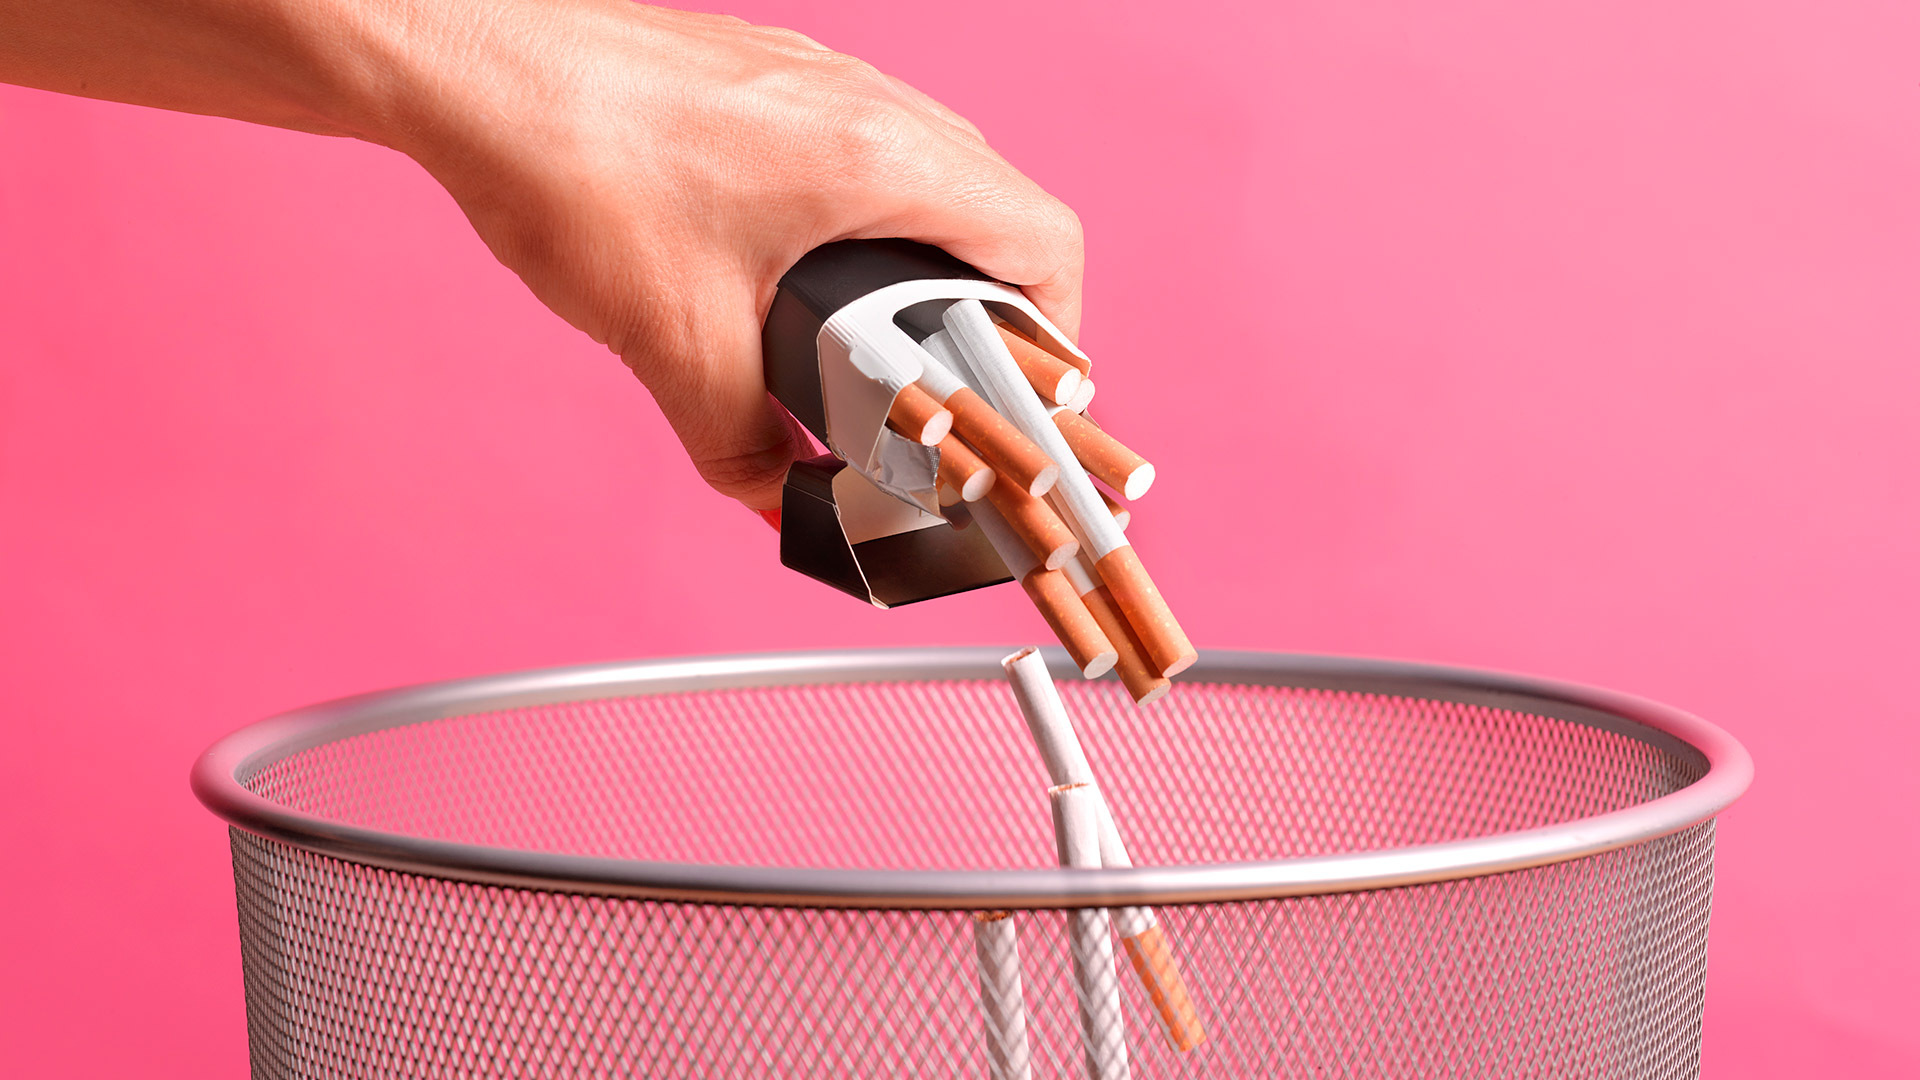 No consumir cigarrillos con tabaco es otra forma de protegerse contra el COVID de larga duración (Getty)